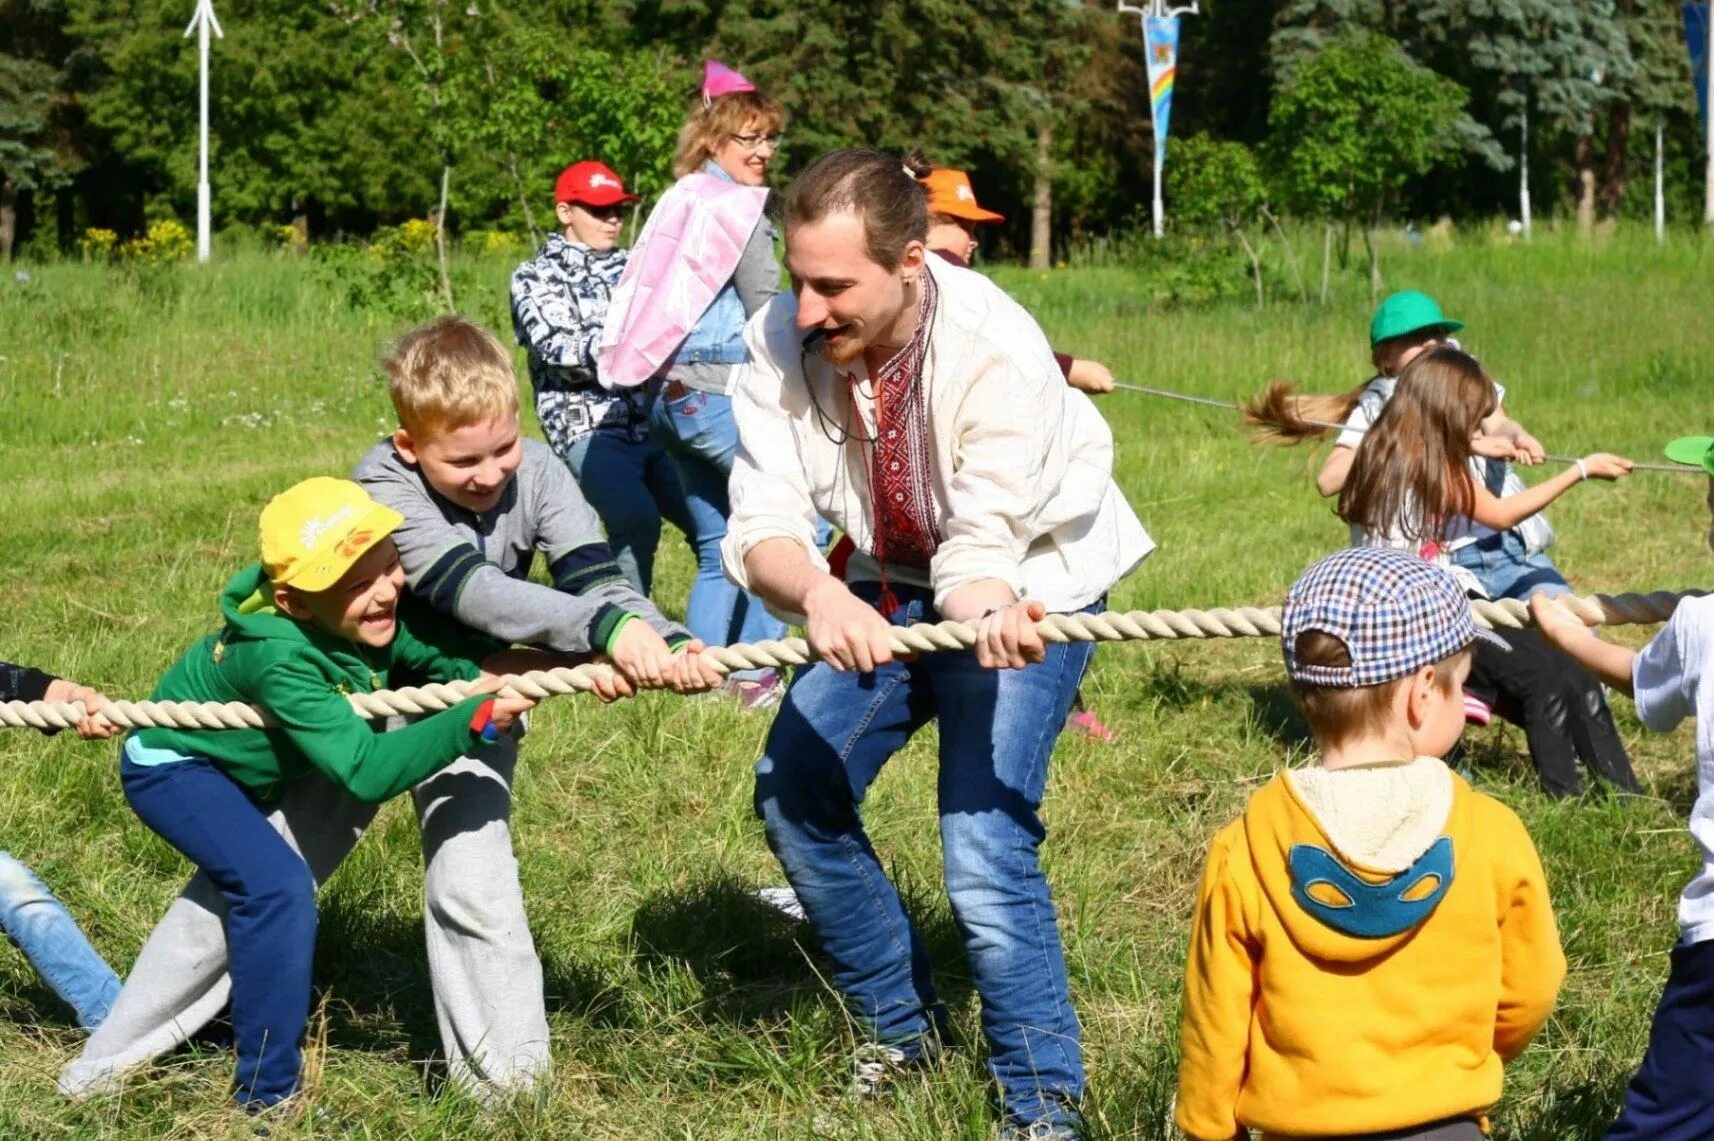 "Лагерь для перемещённых лиц3" - Подольск. Летний лагерь. Досуг детей. Детский лагерь.